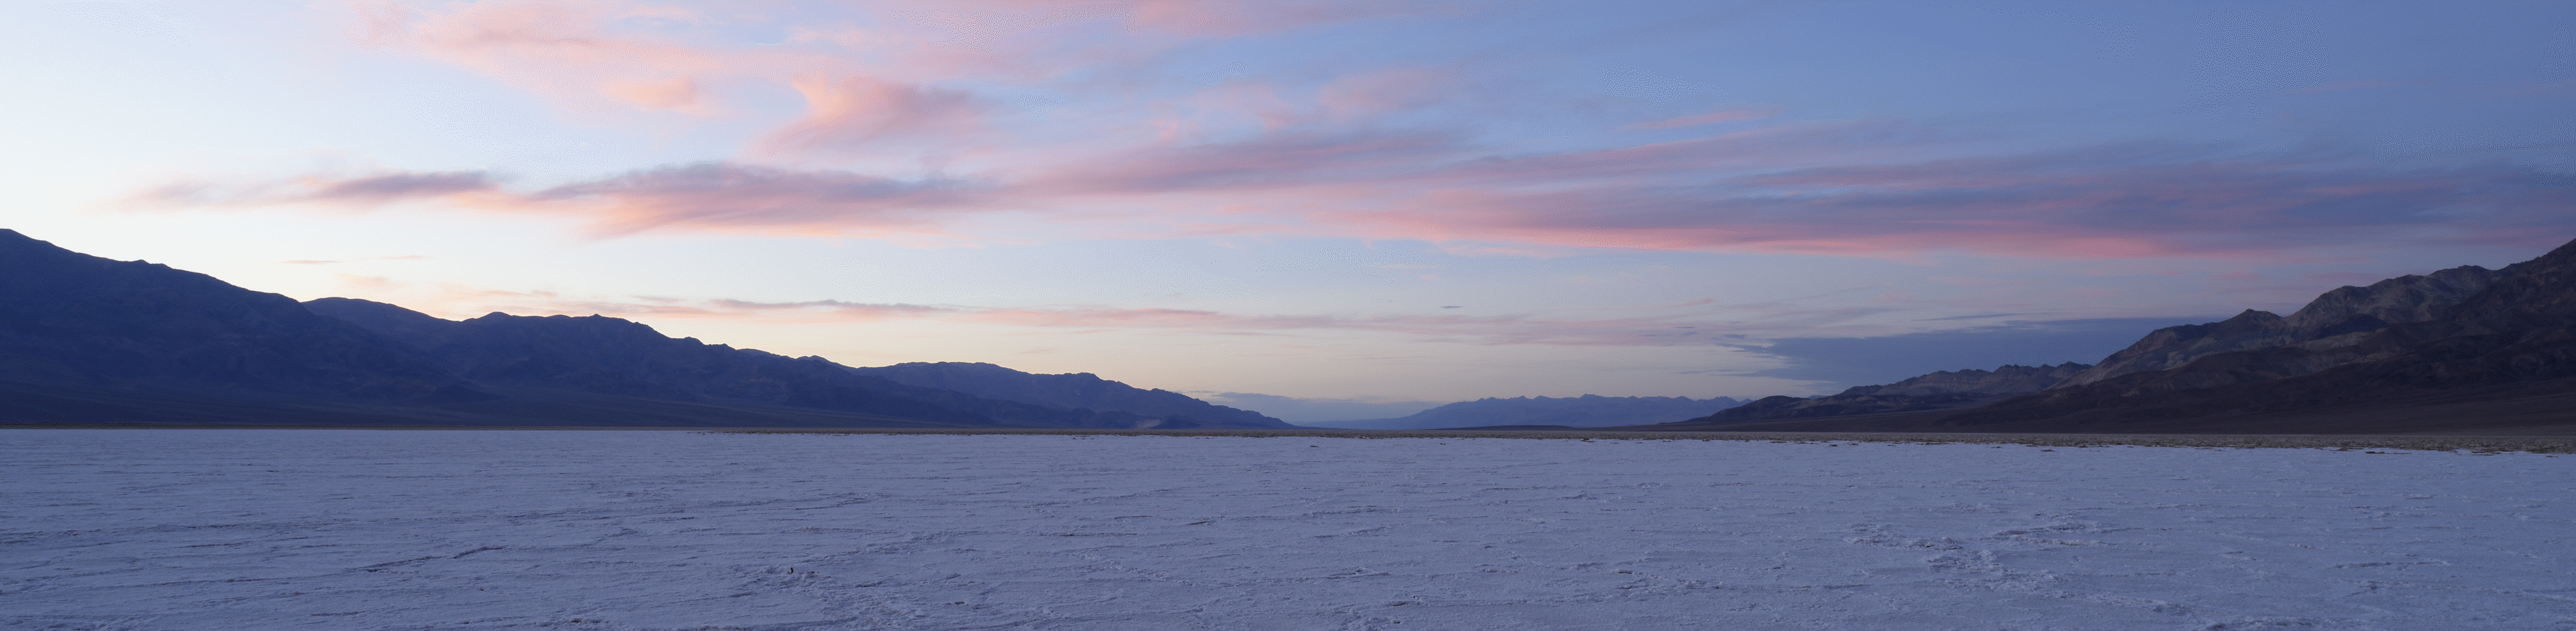 Širokokutna snimka pustinjskog pejzaža u suton iza planina u daljini